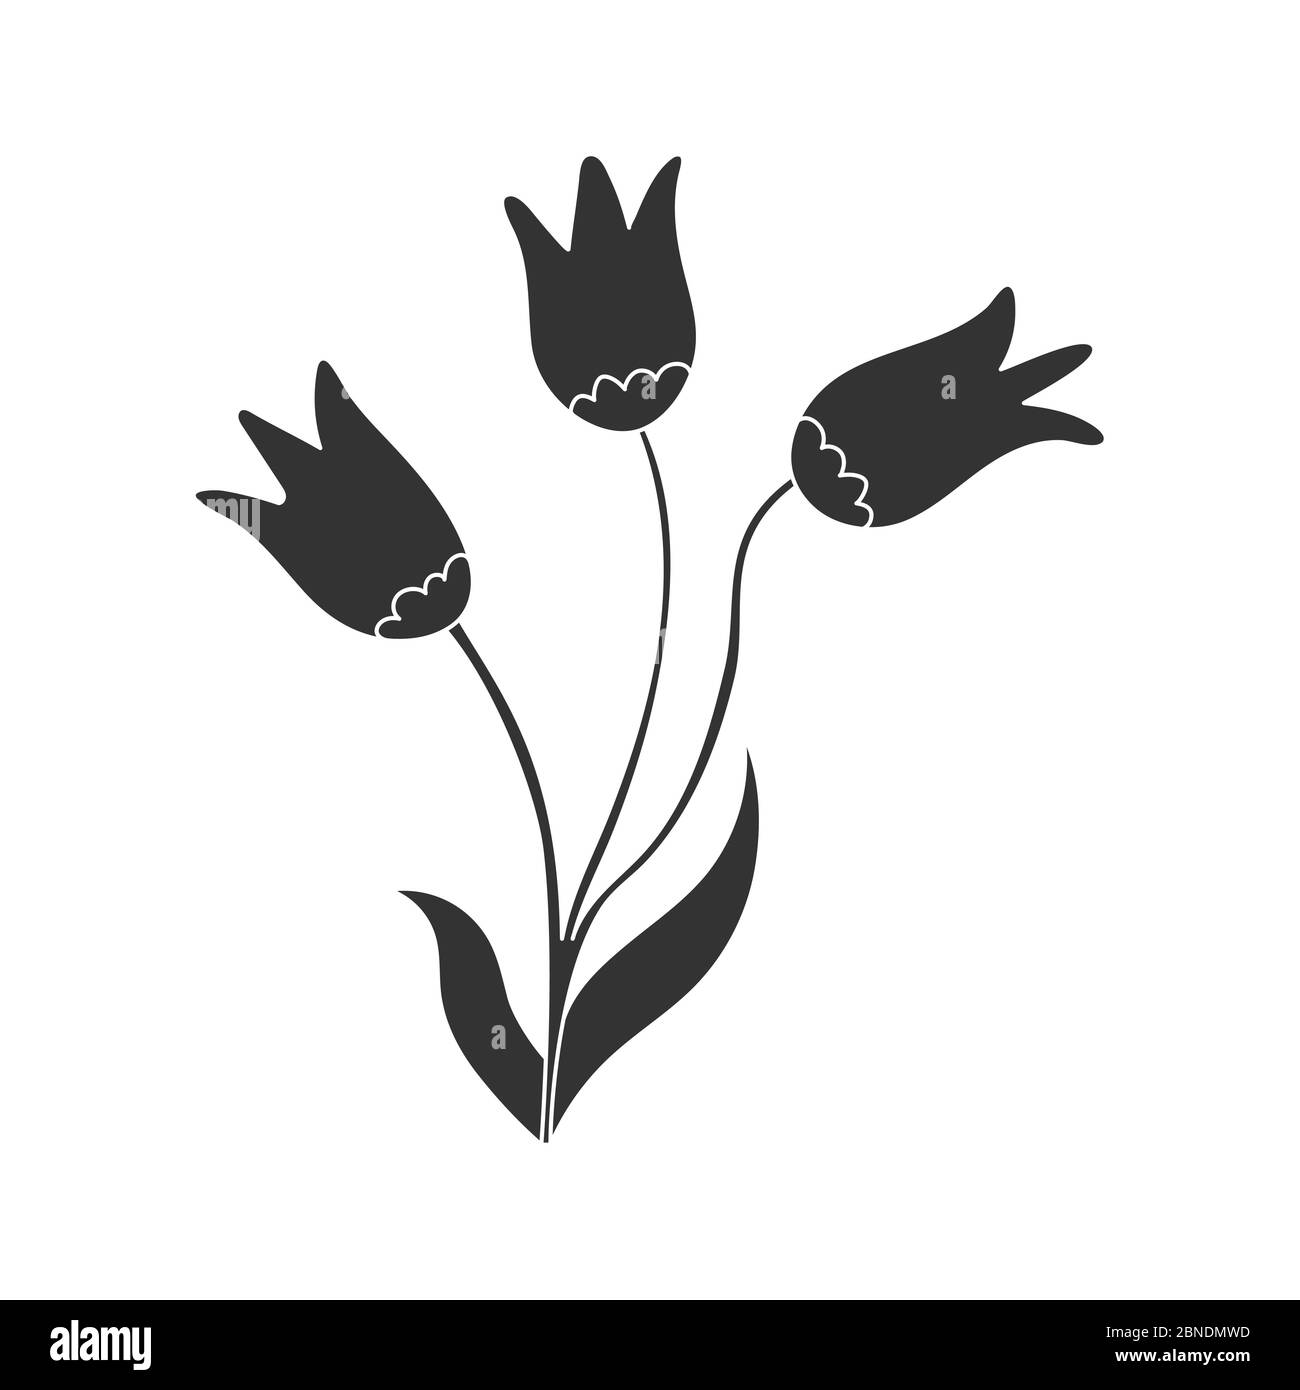 Vektorgrafik einer Blume. Stock Illustration isoliert auf einem weißen Hintergrund gefüllt Silhouette für thematische Zeichnungen und Scrapbooking Stock Vektor